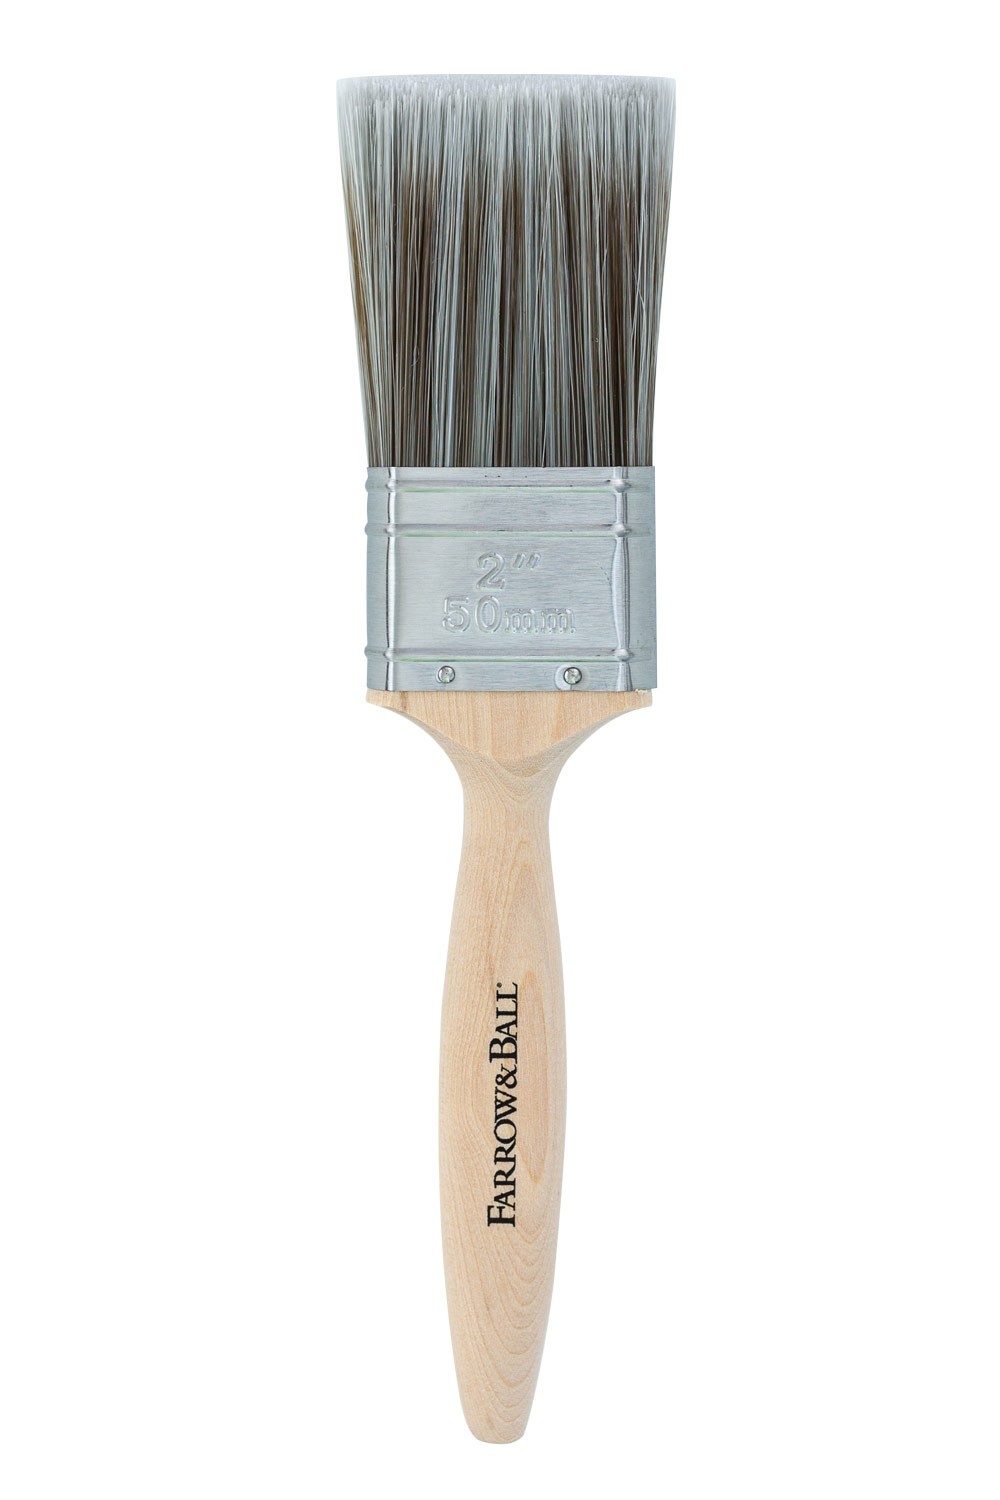 2-inch-paint-brush